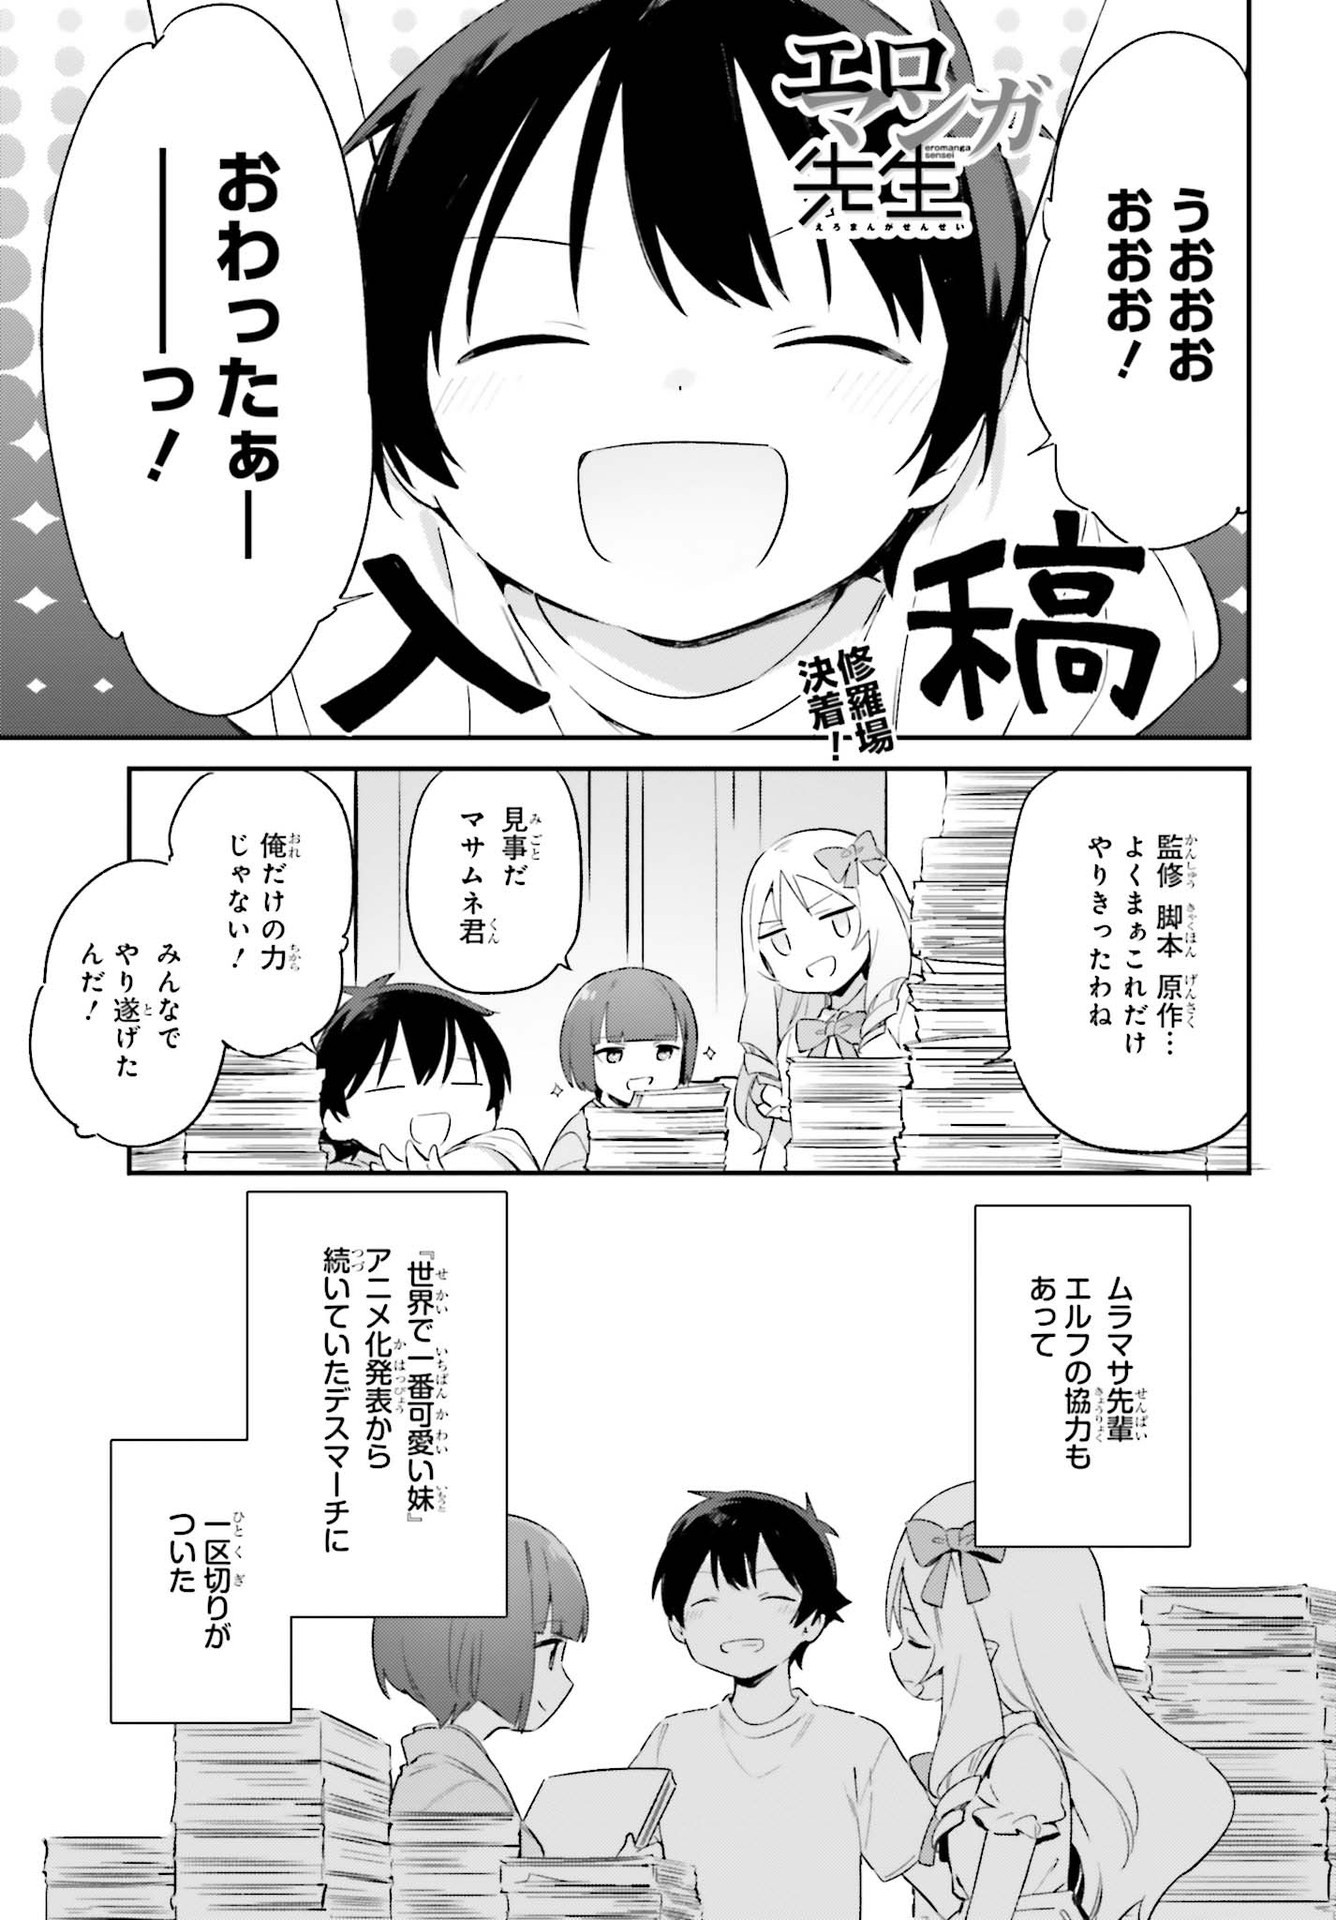 Ero Manga Sensei - Chapter 77 - Page 1